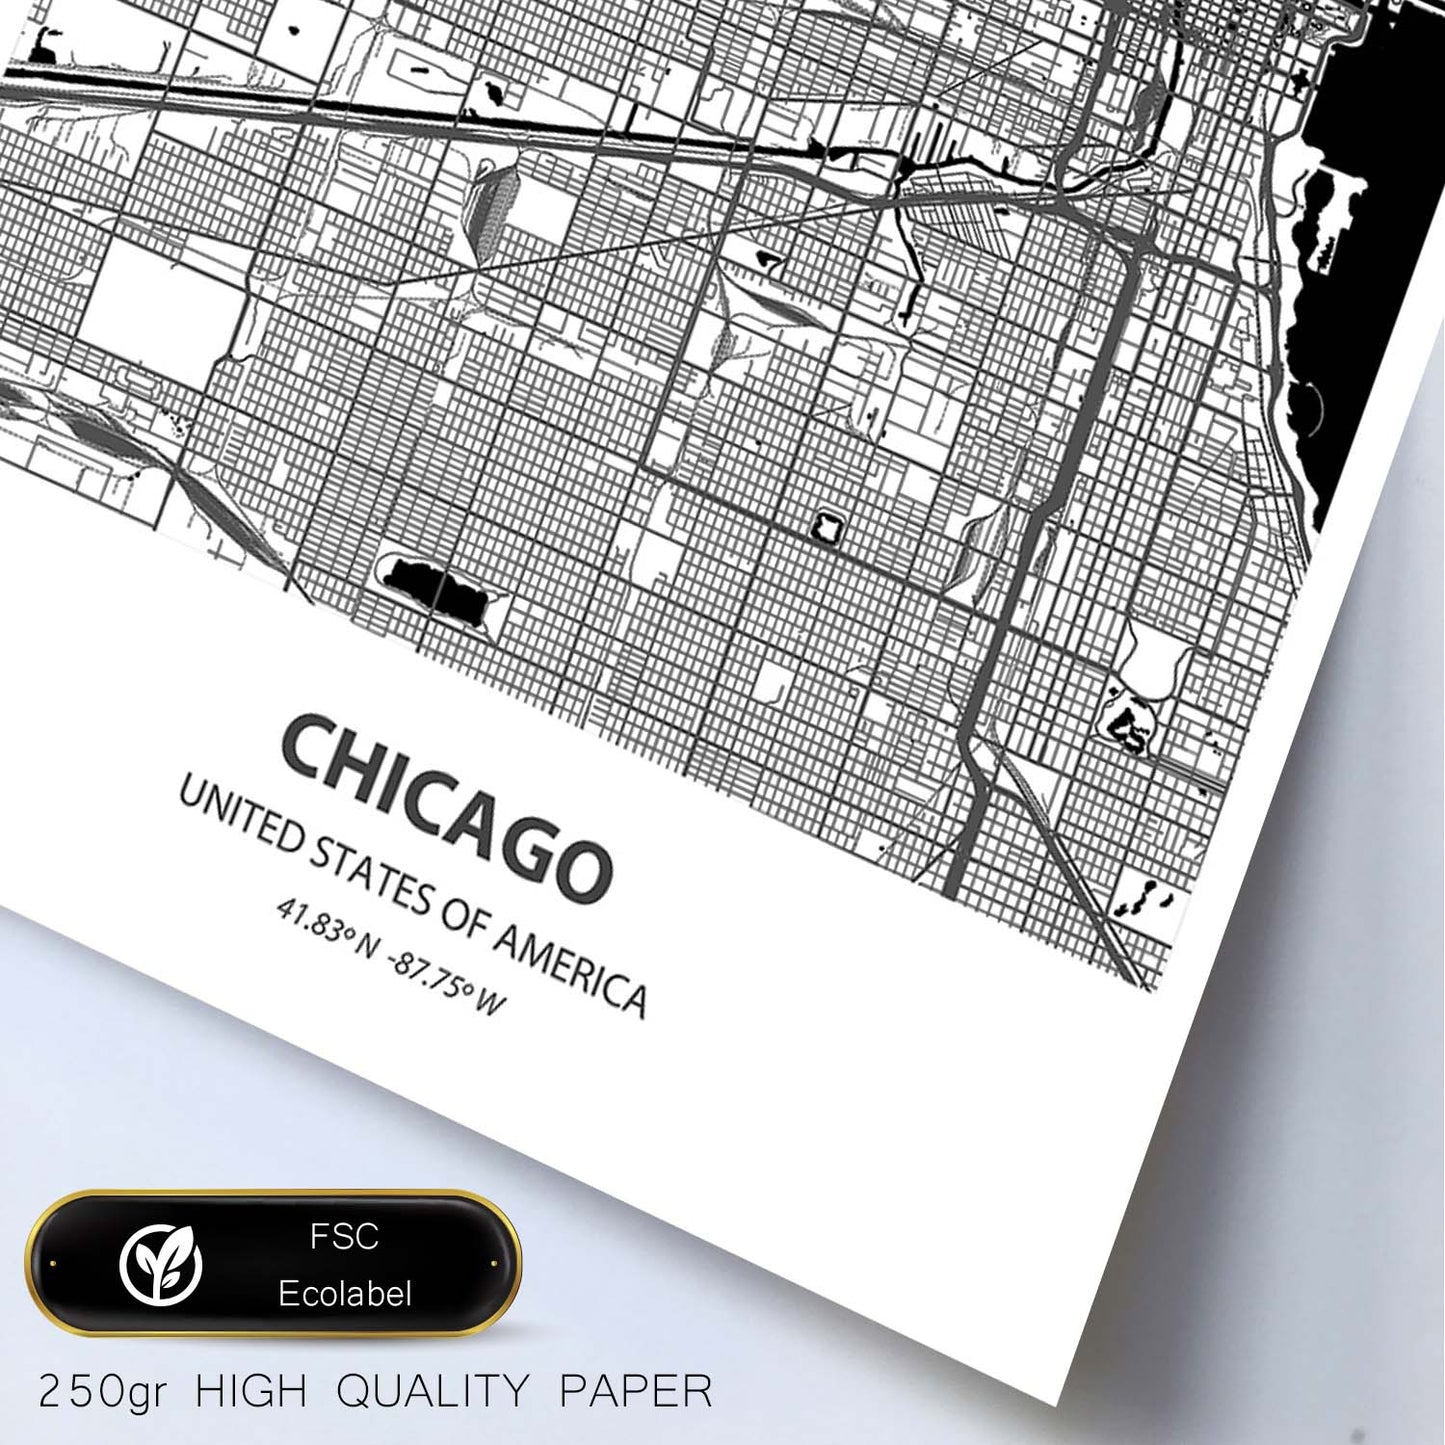 Poster con mapa de Chicago - USA. Láminas de ciudades de Estados Unidos con mares y ríos en color negro.-Artwork-Nacnic-Nacnic Estudio SL